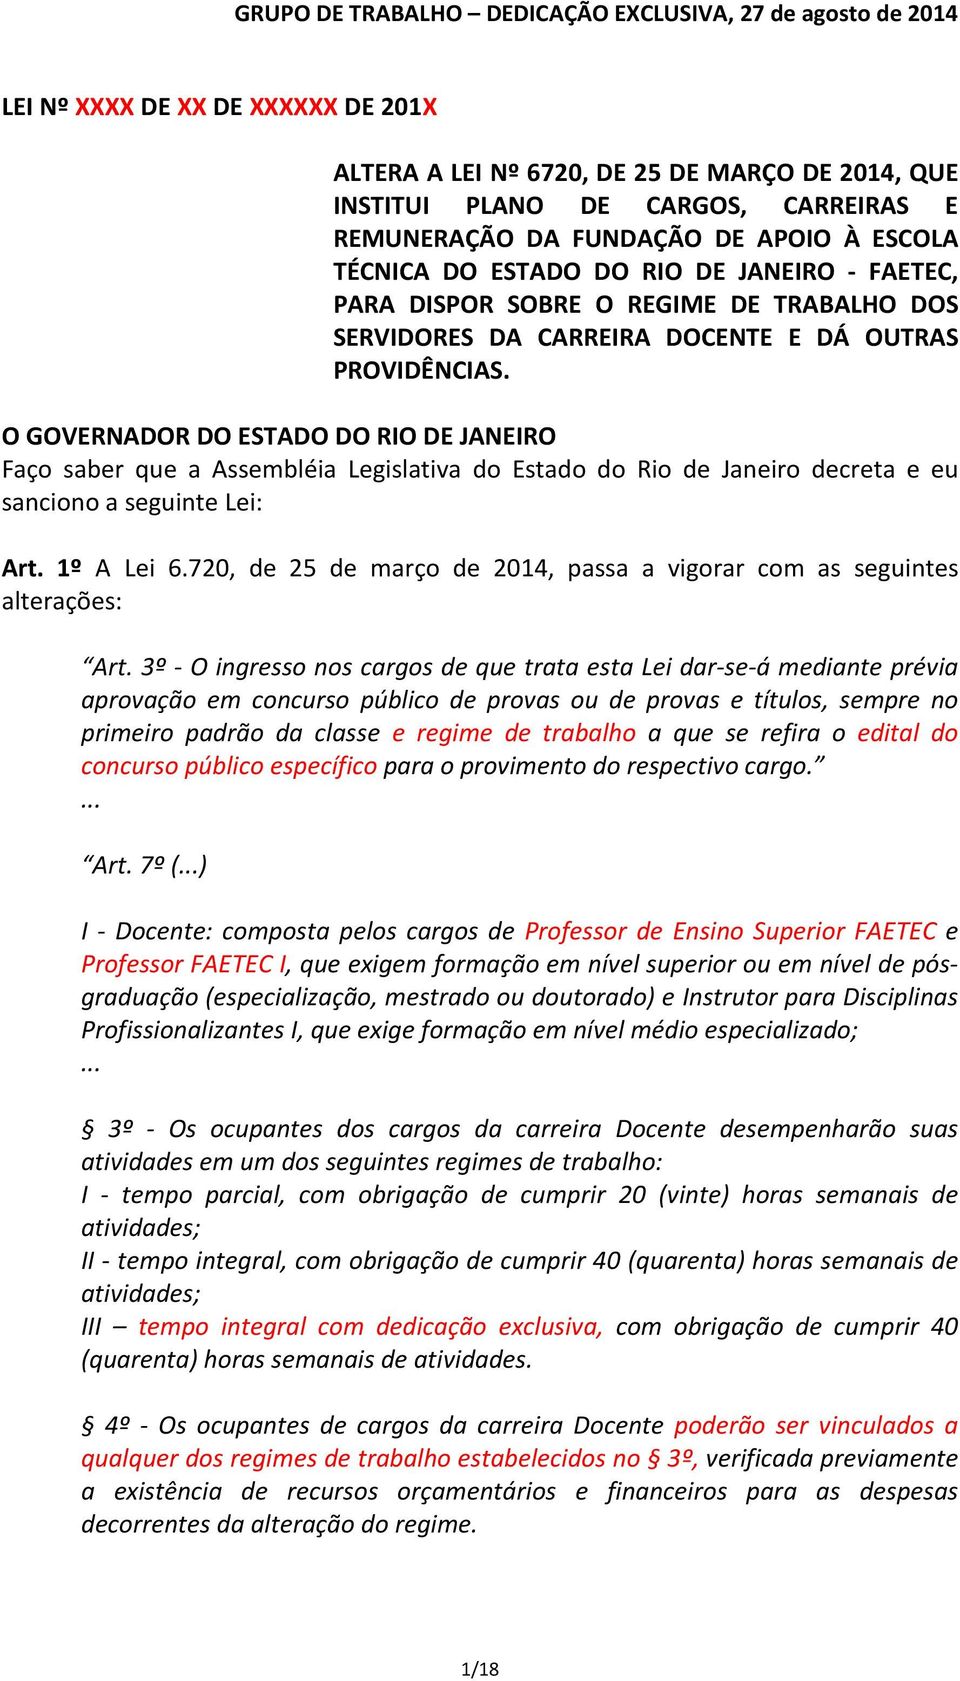 O GOVERNADOR DO ESTADO DO RIO DE JANEIRO Faço saber que a Assembléia Legislativa do Estado do Rio de Janeiro decreta e eu sanciono a seguinte Lei: Art. 1º A Lei 6.